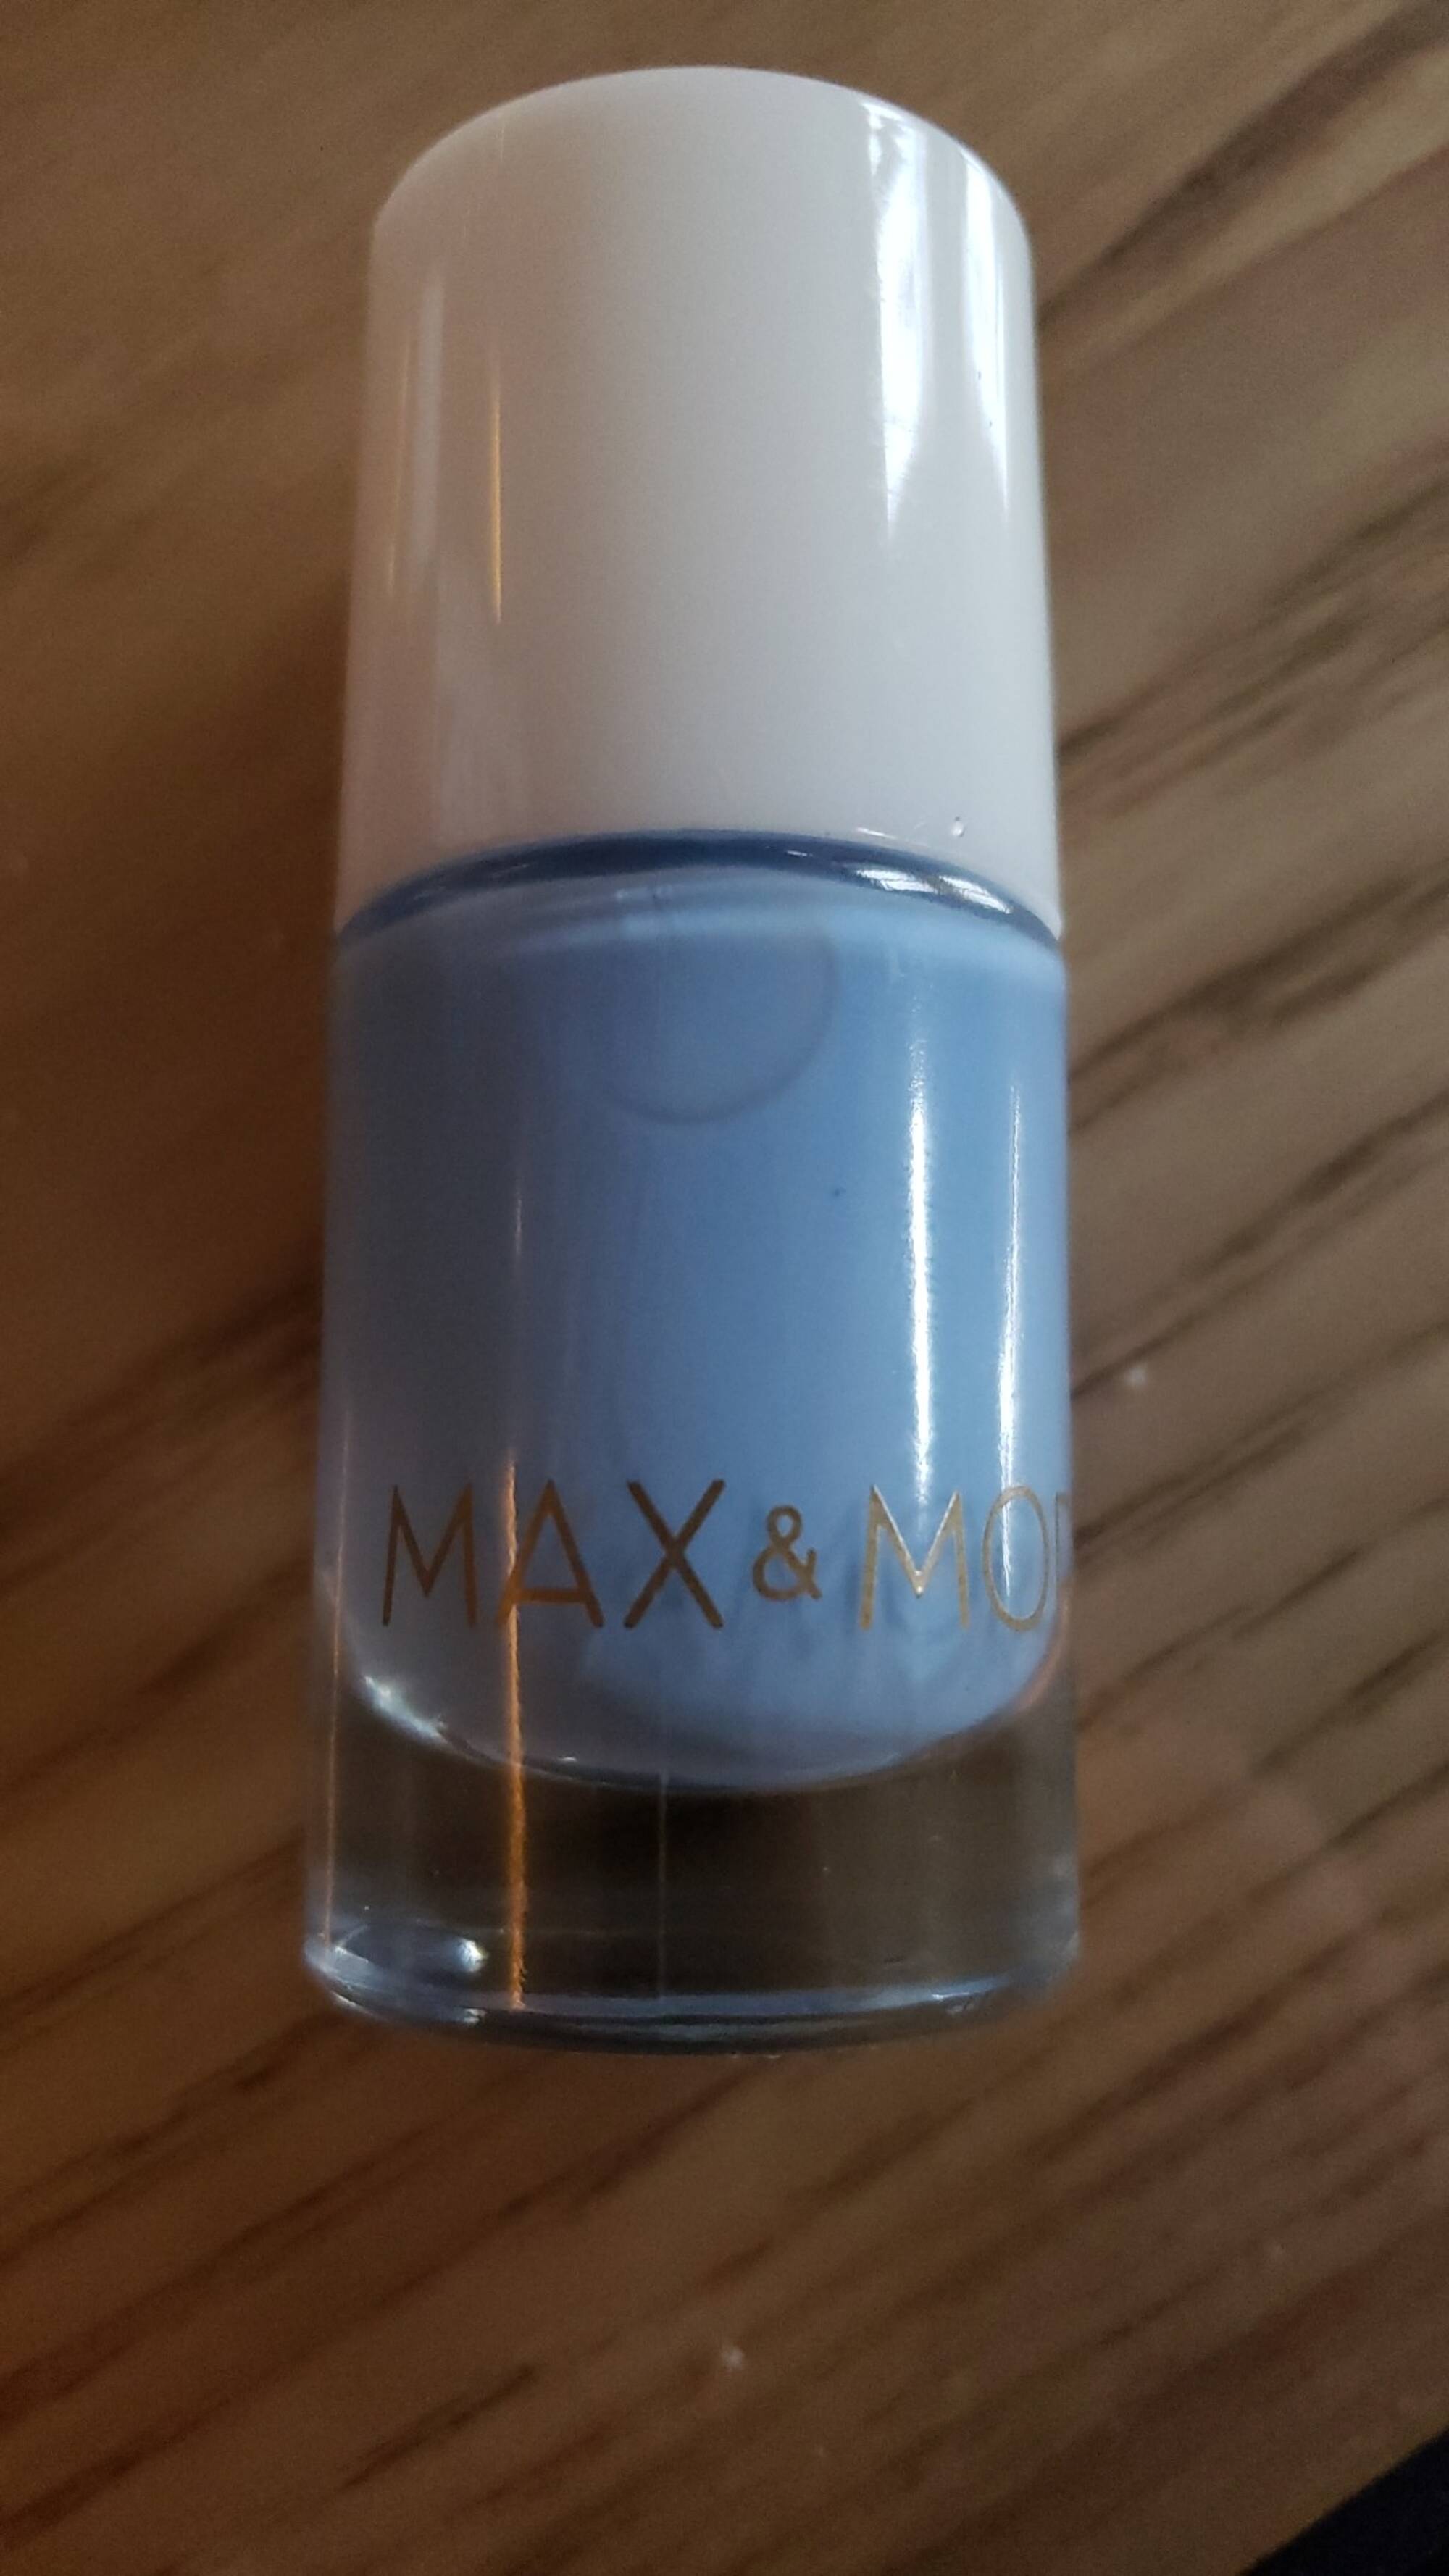 MAX & MORE - Nail polish 461 summer breeze